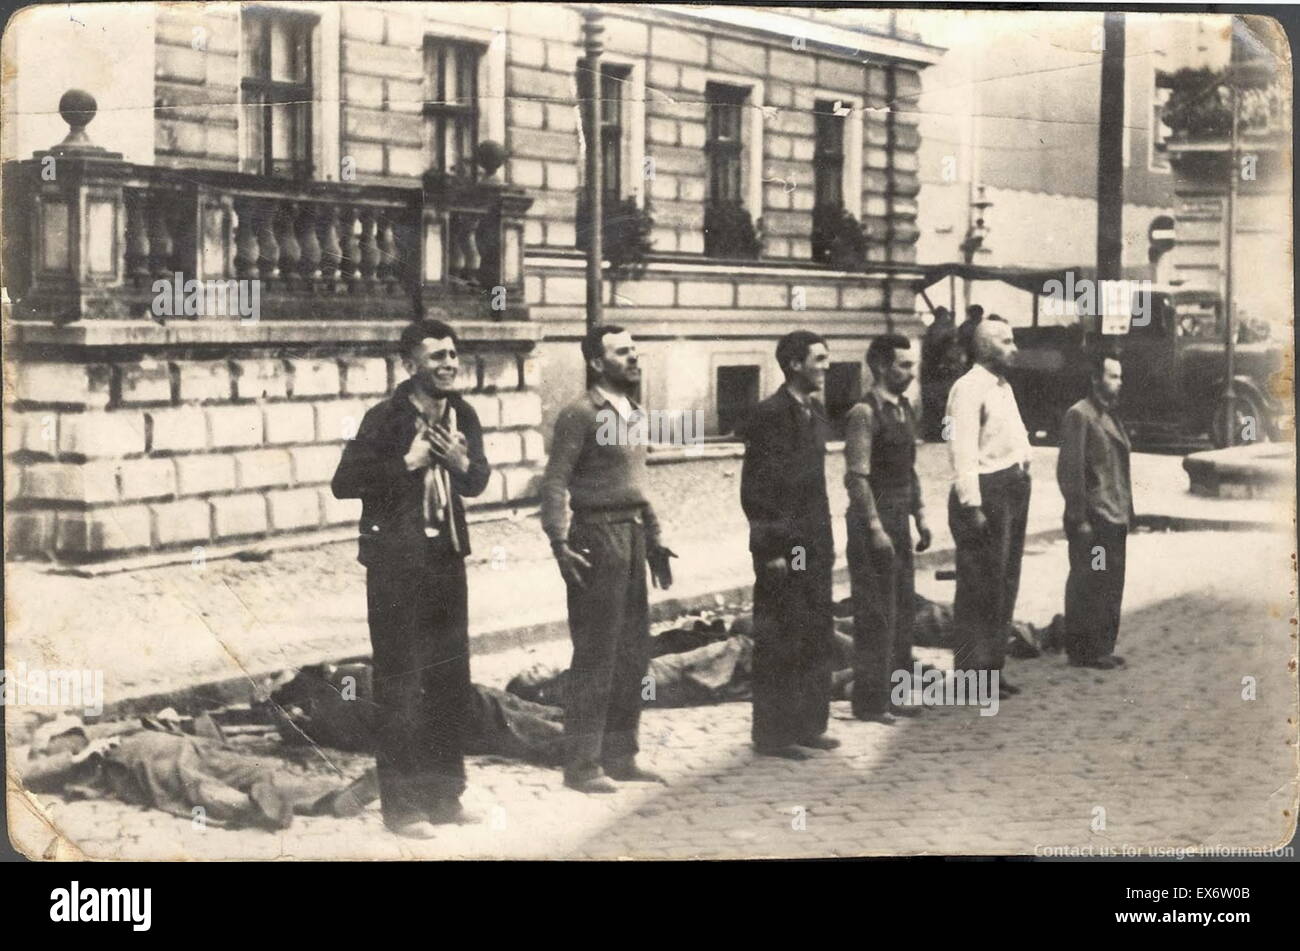 Frente a la muerte las diferentes expresiones de seis civiles polacos, momentos antes de la muerte por fusilamiento, después de la invasión nazi de Polonia al comienzo de la segunda guerra mundial 1939 Foto de stock